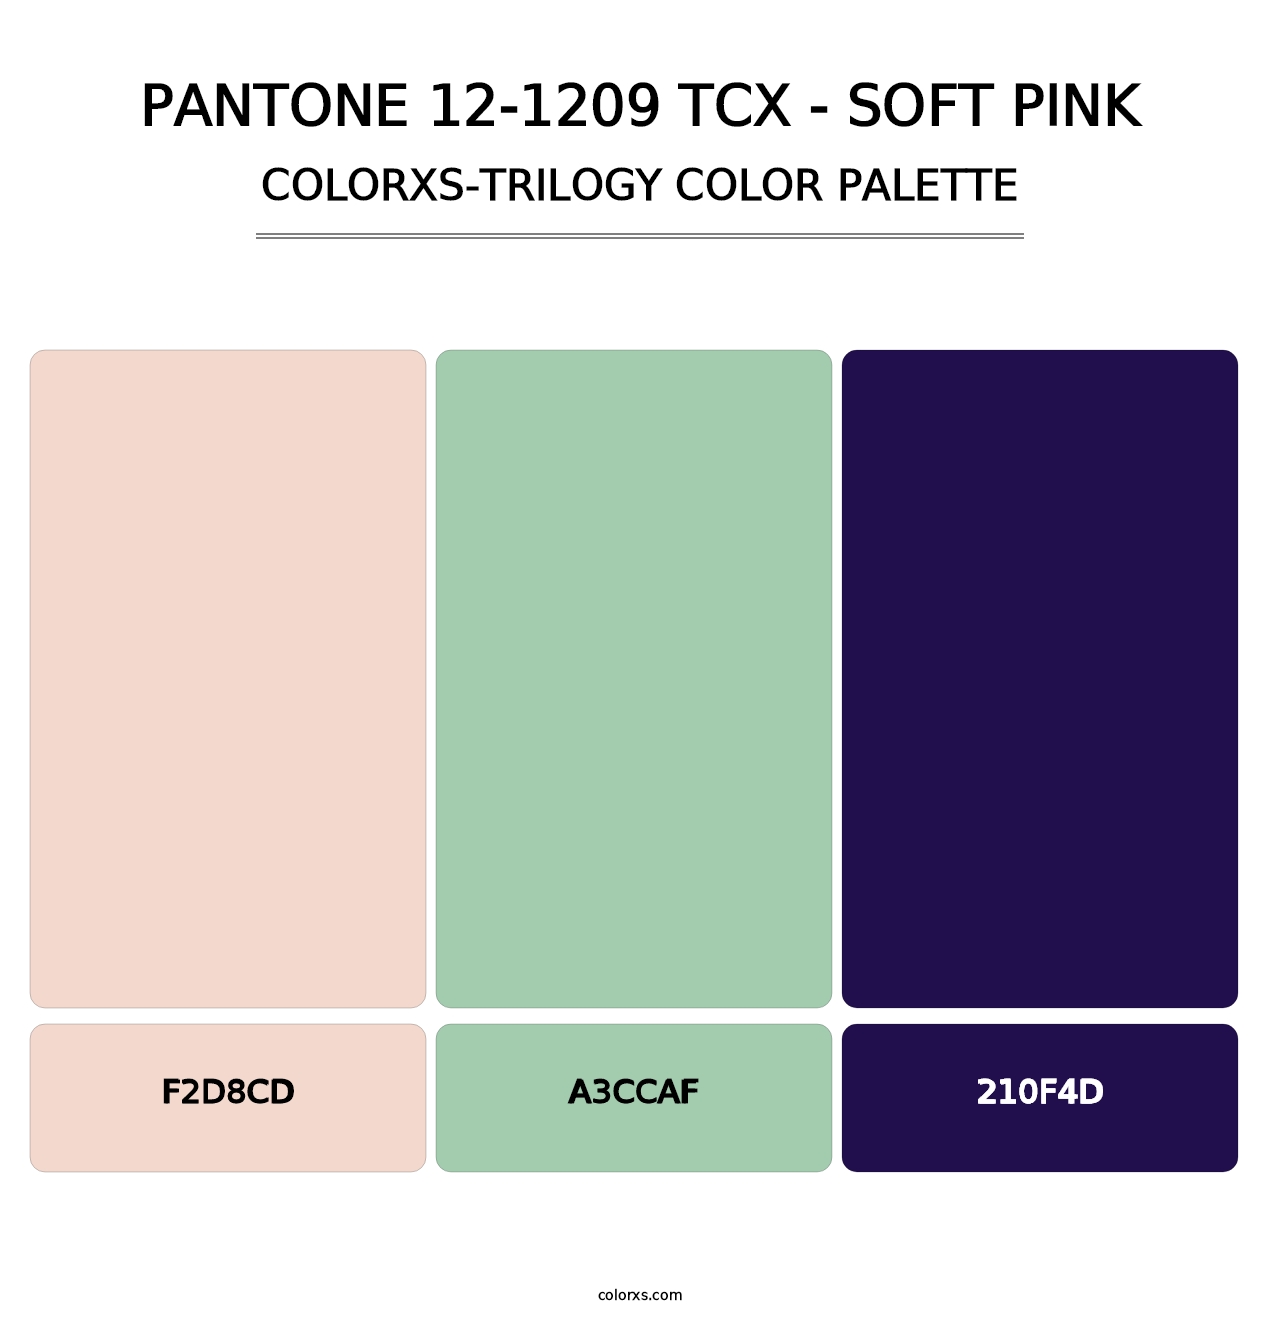 PANTONE 12-1209 TCX - Soft Pink - Colorxs Trilogy Palette